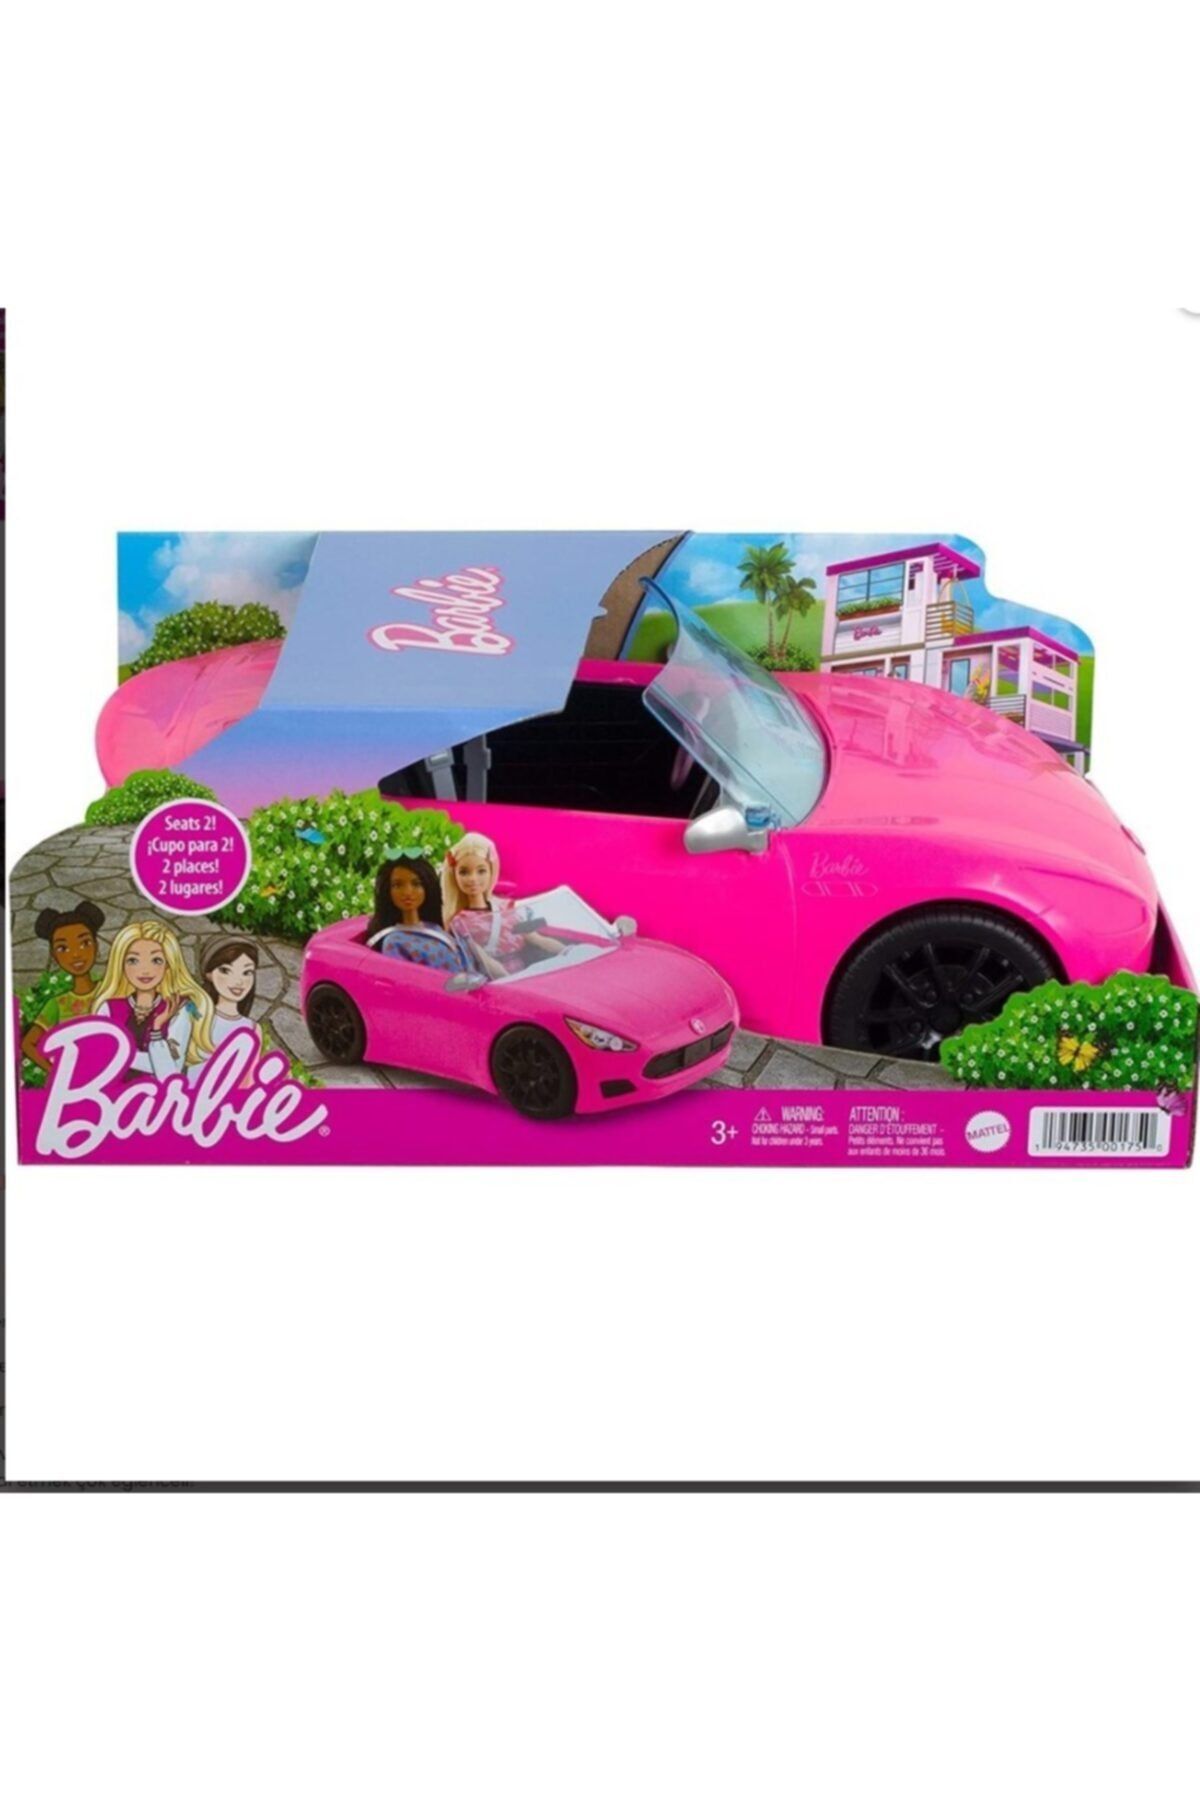 Barbie Cabrio 2 Kişilik Arabası Tekerlekli Pembe Araba Ve Gerçekçi Detaylar